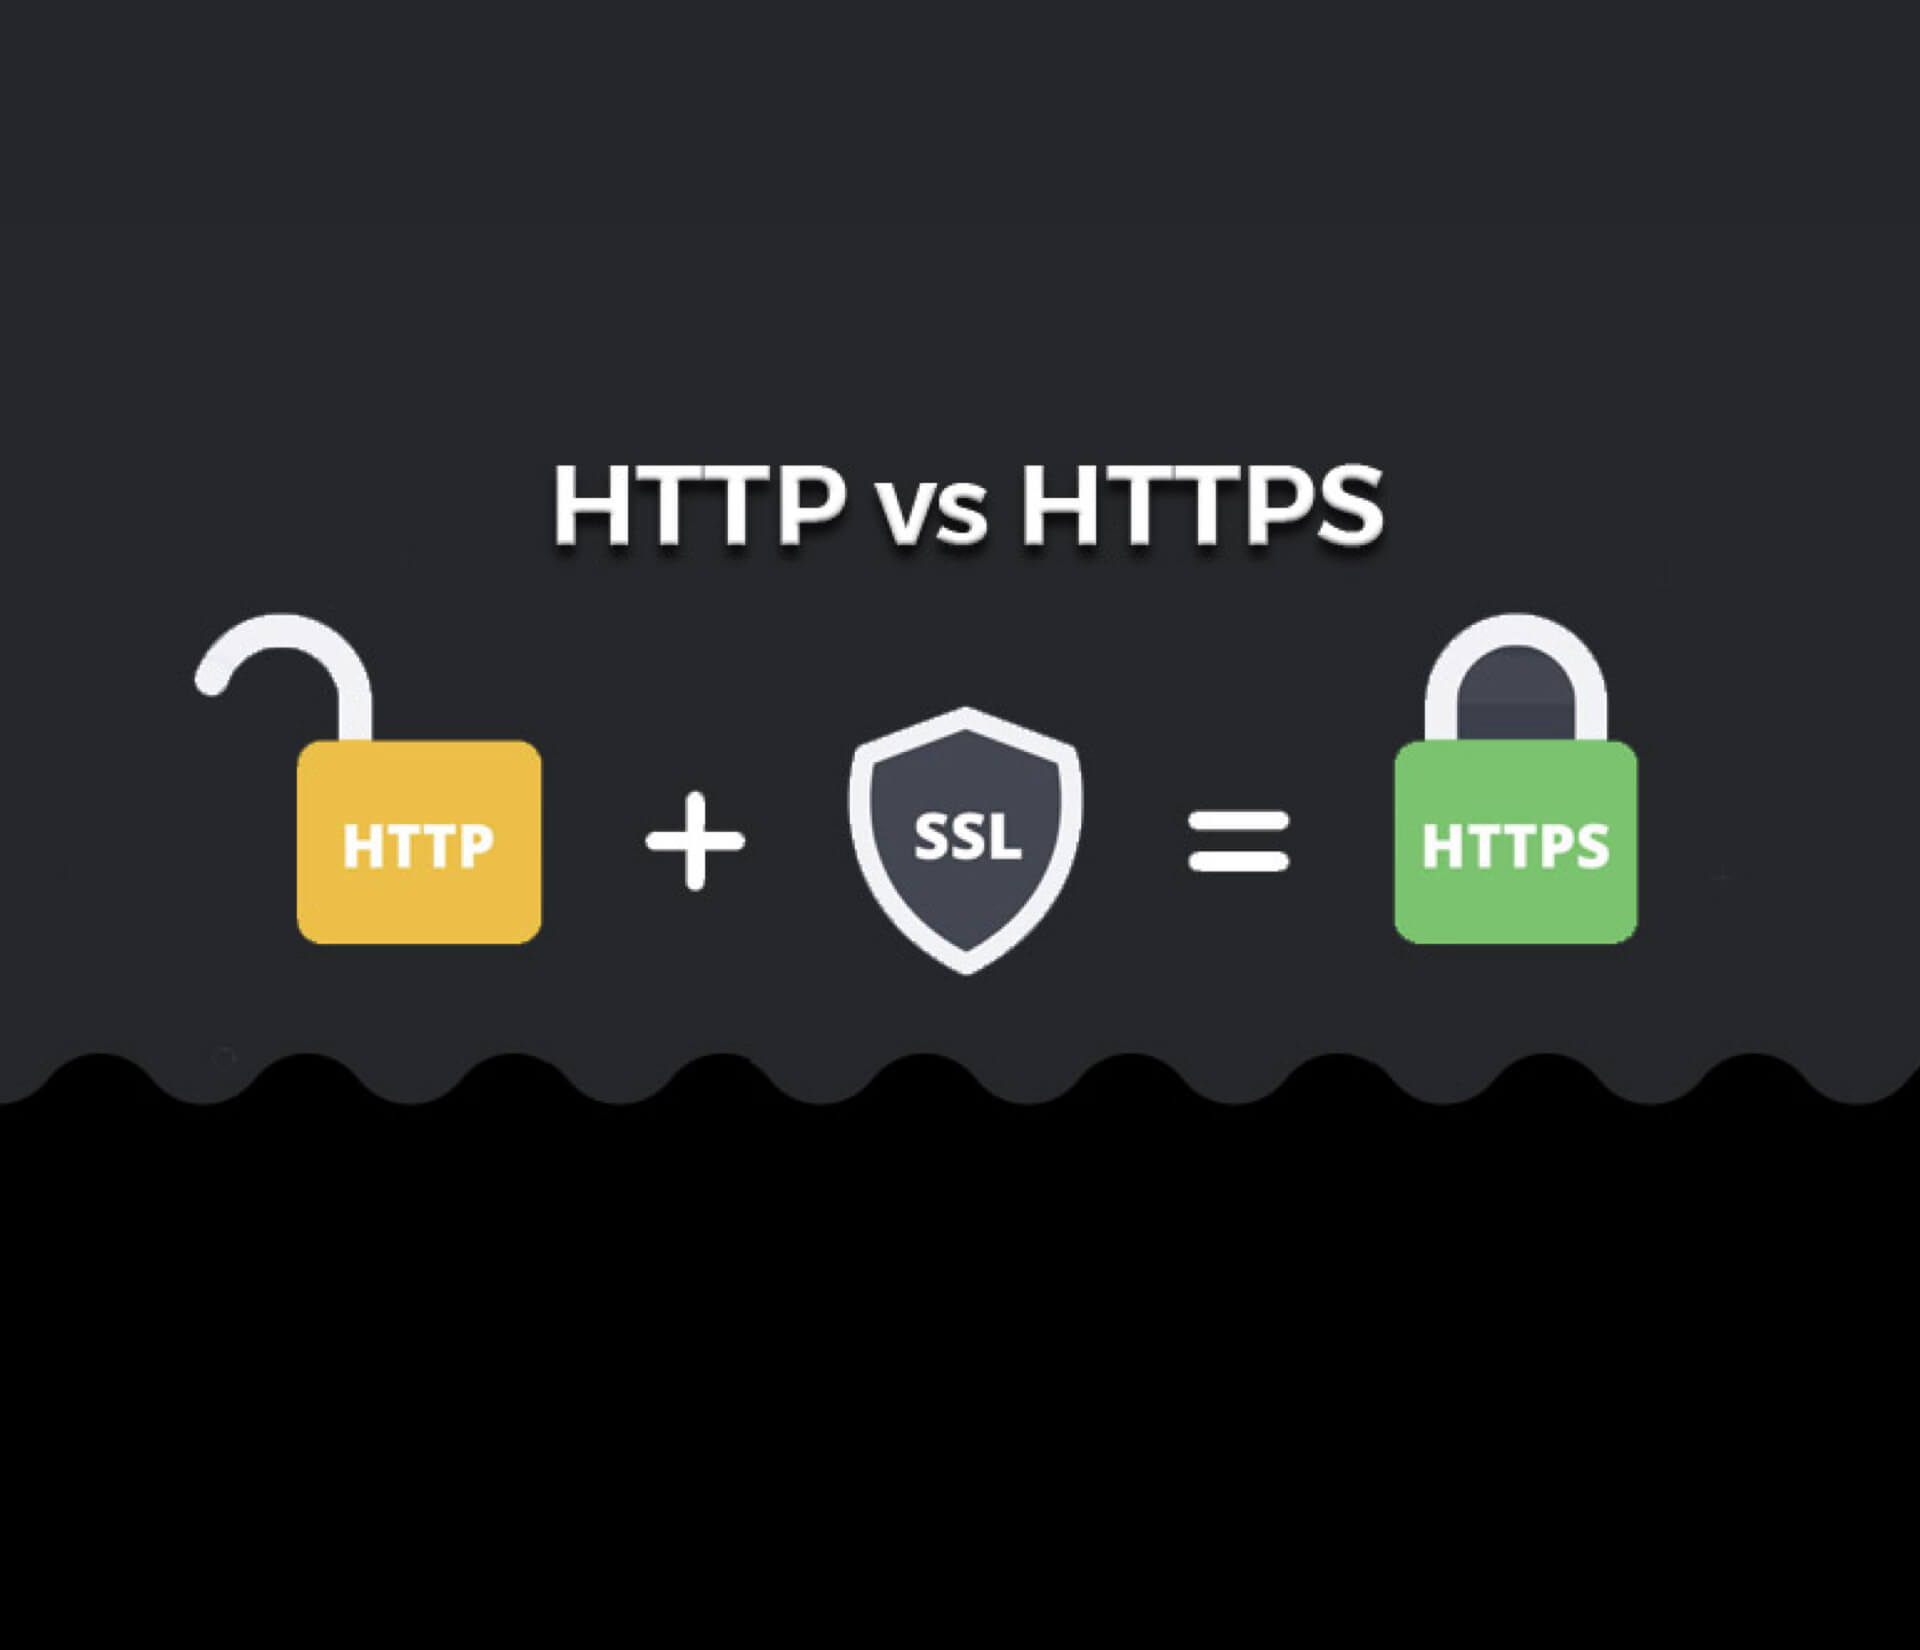 Https. Http+SSL=https. Https6. Https://ты. Небезопасный сайт SSL.